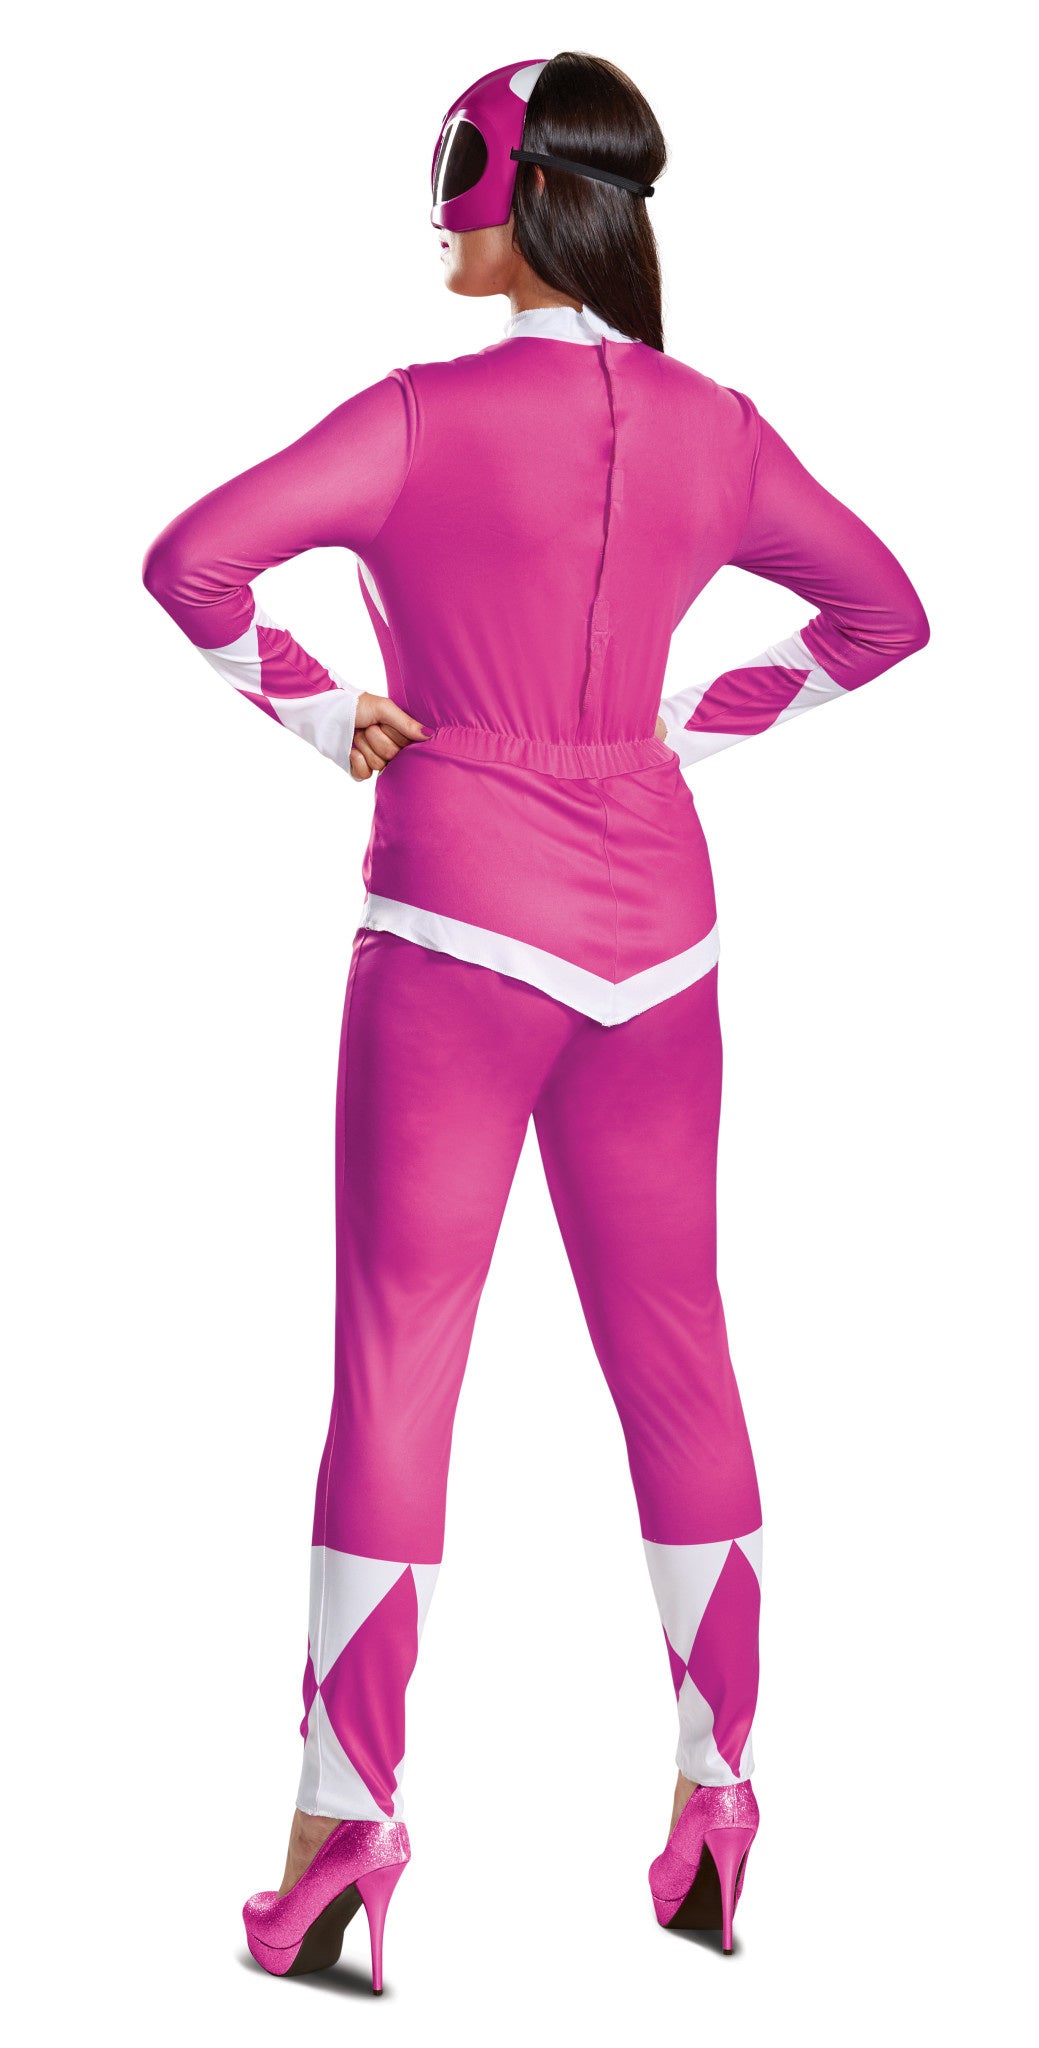 Women's Deluxe Pink Power Ranger